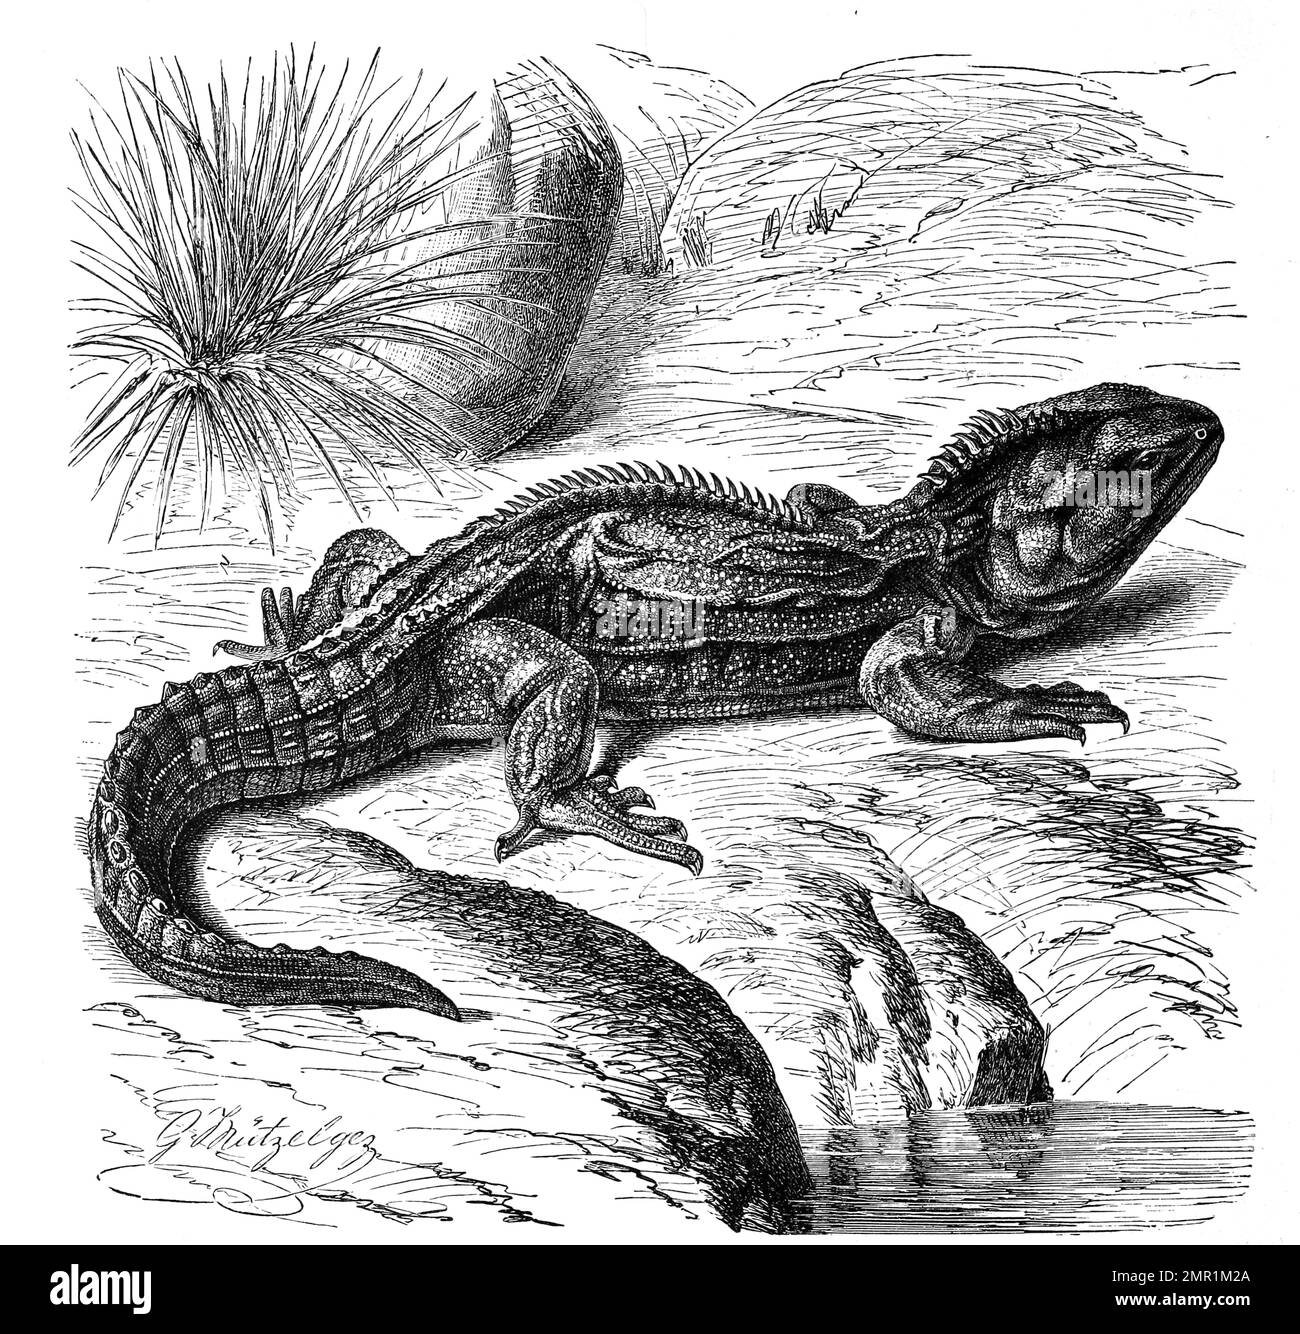 Reptilien, Brückenechse oder Tuatara, Sphenodon punctatus ist die einzige rezente Art der Familie Sphenodontidae, Historisch, digital restaurierte Reproduktion von einer Vorlage aus dem 19. Jahrhundert Banque D'Images